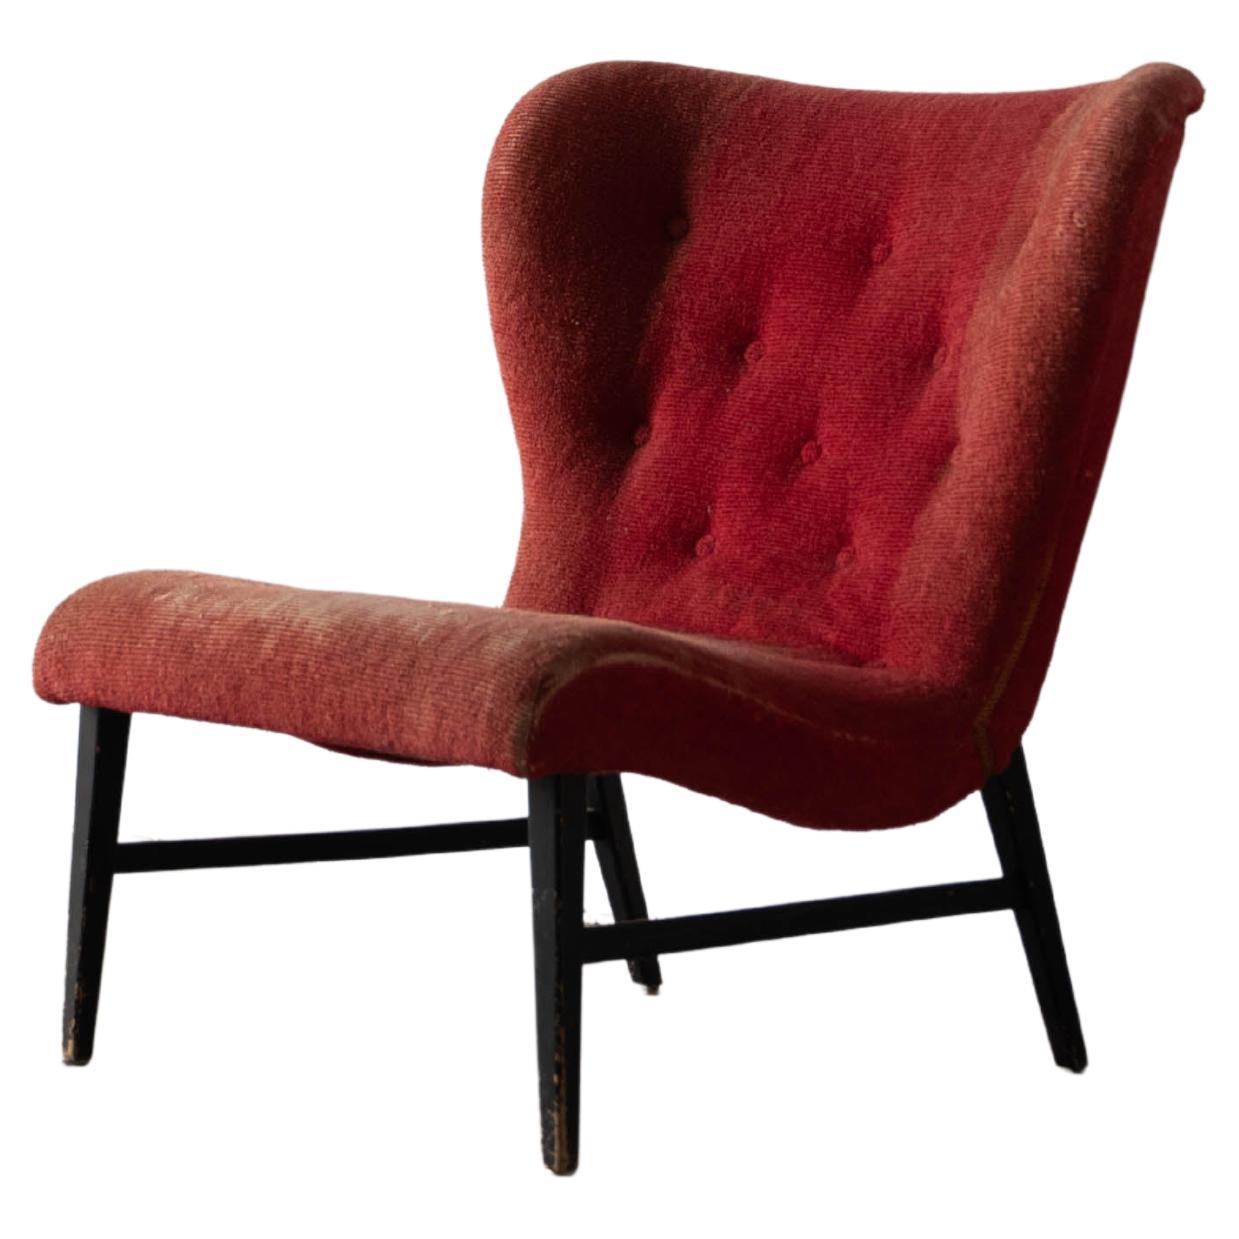 Erik Karlén 'Attributed' Sessel ohne Armlehne, roter Samt, Holz, Schweden, 1940er Jahre